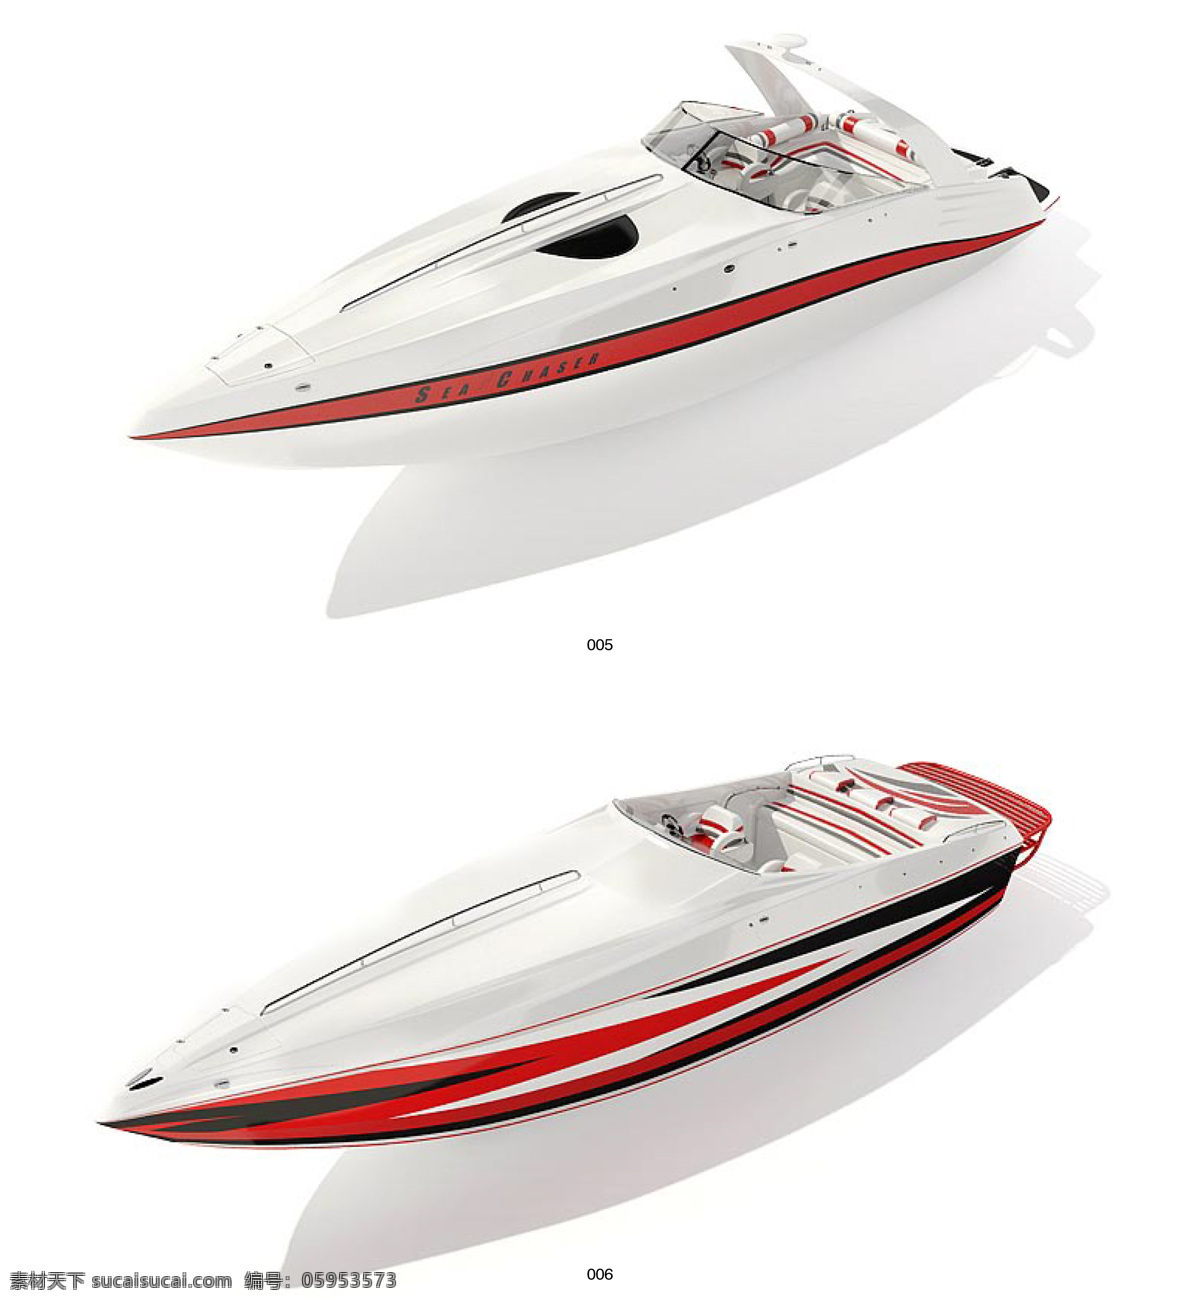 交通工具 船 快艇 模型 船模型 3d设计 max 室外模型 水上模型 汽艇 白色